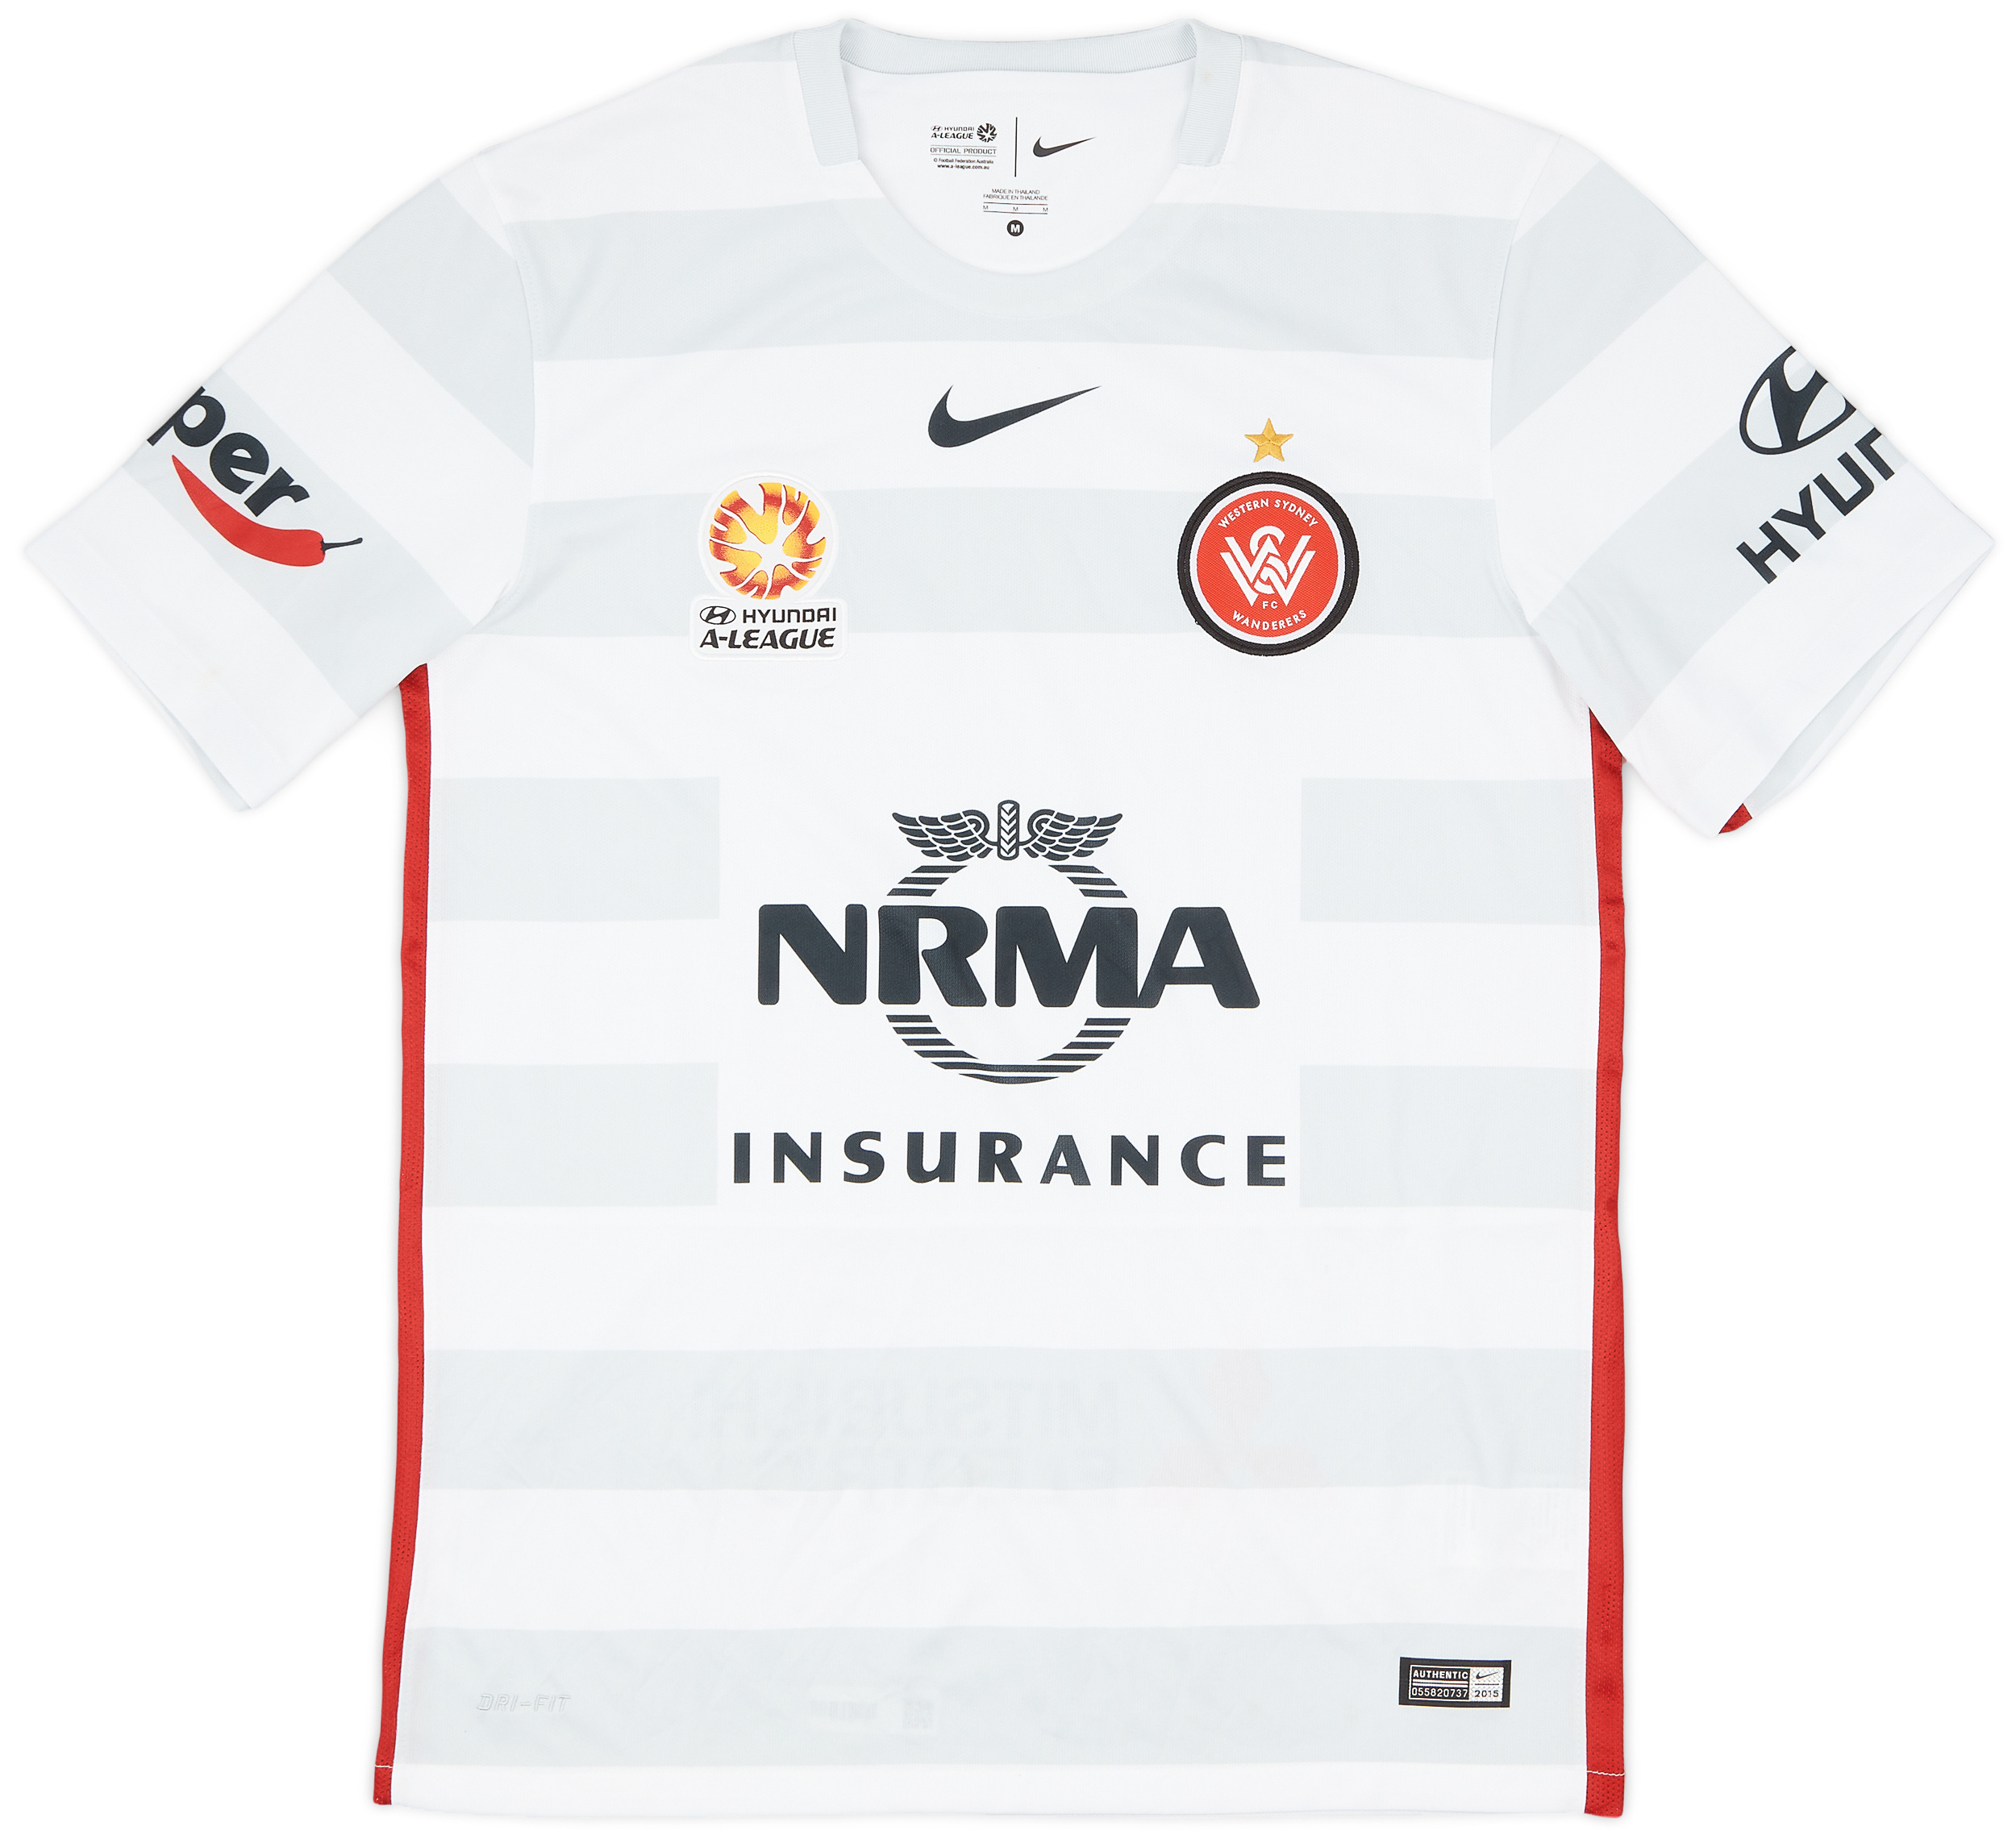 Retro Western Sydney Wanderers Shirt